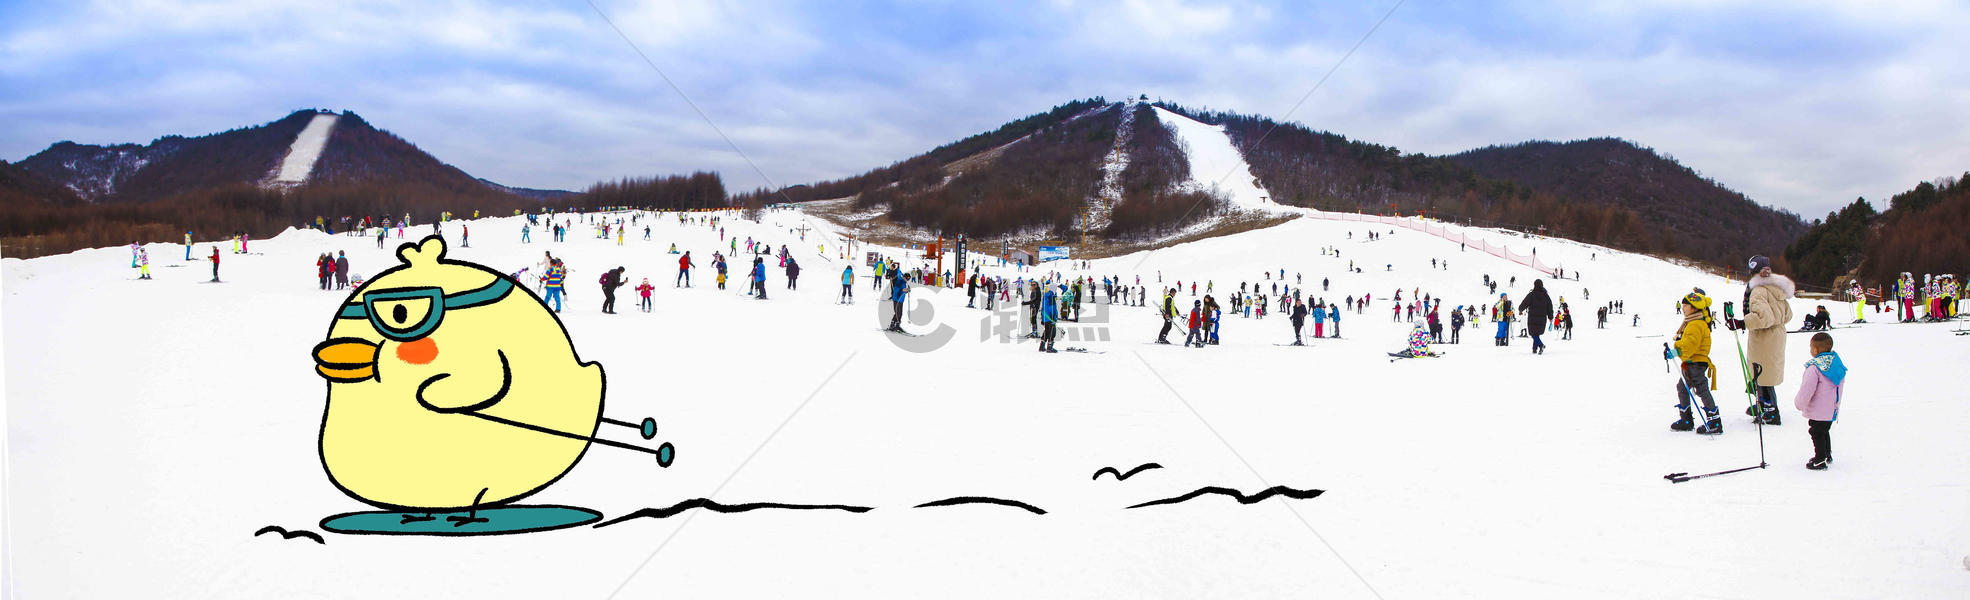 创意滑雪鸡图片素材免费下载